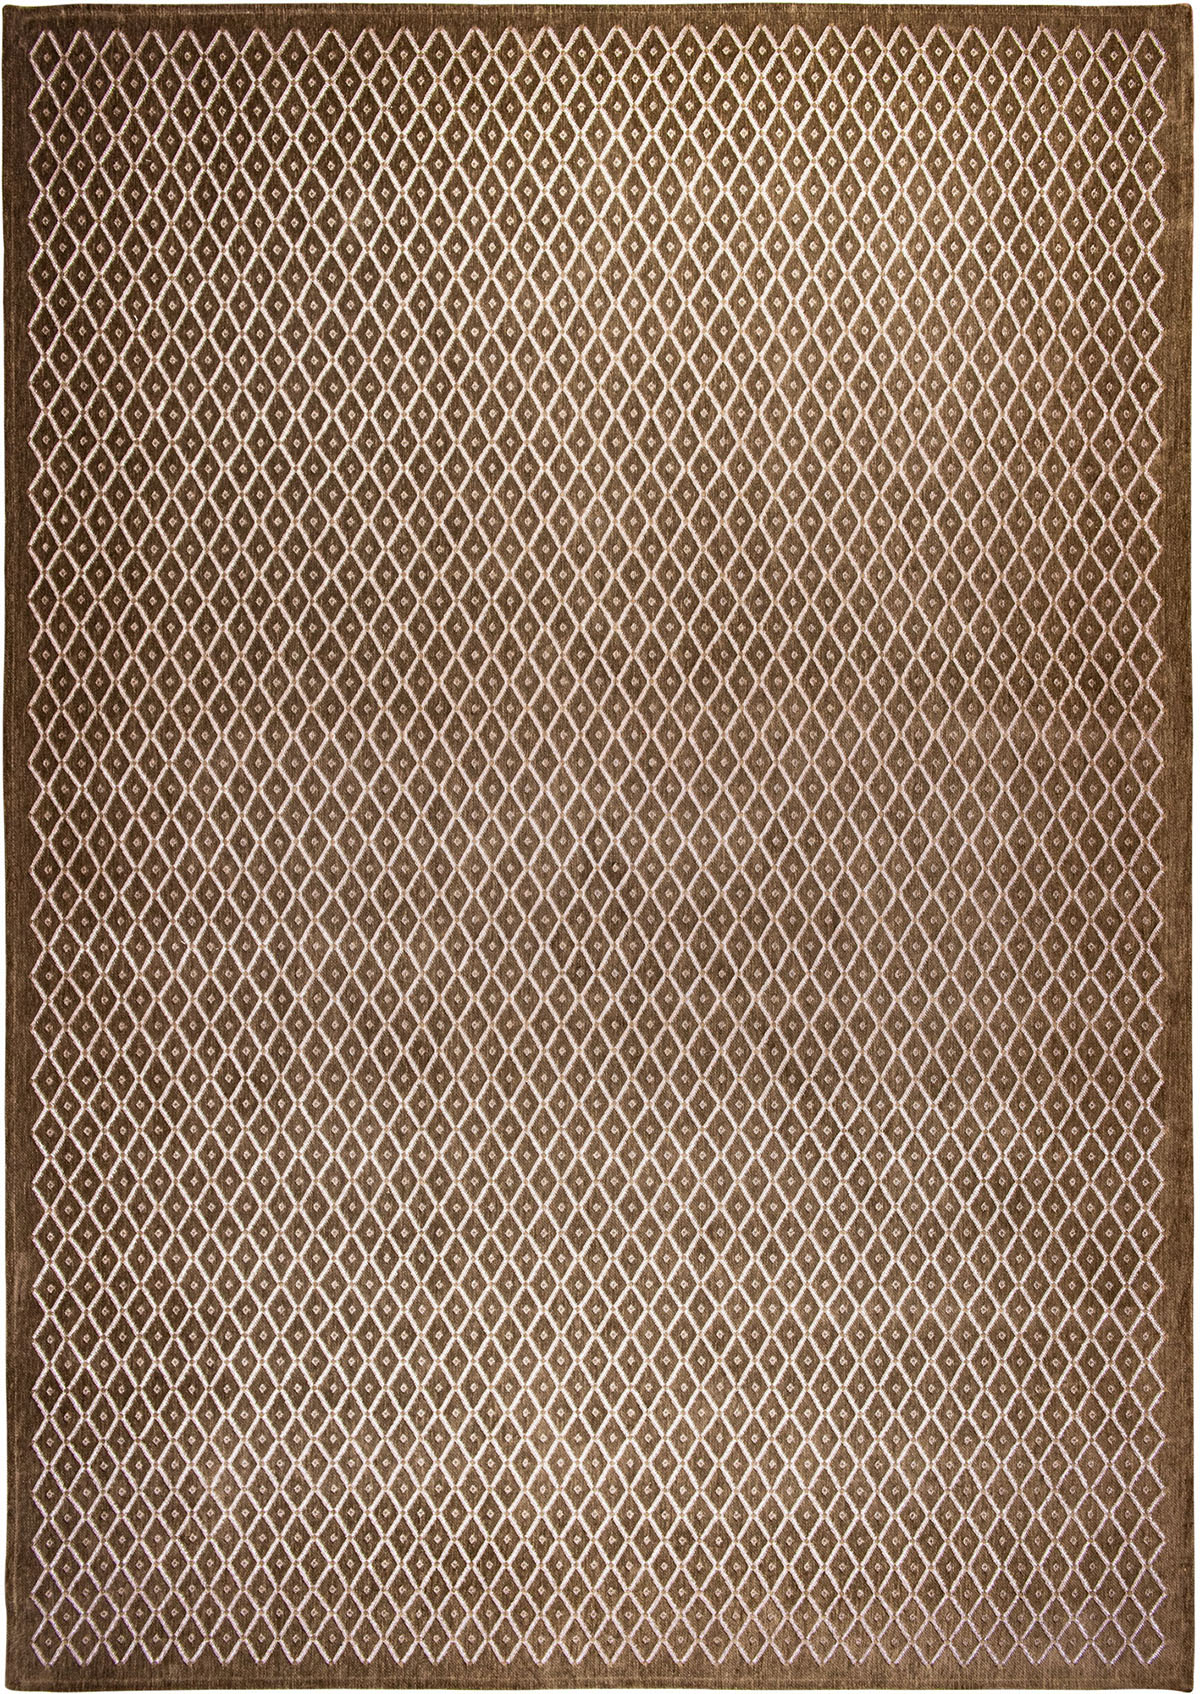 Brązowy Nowoczesny Dywan - ROMBO TALPA 9038 - Rozmiar: 170x240 cm